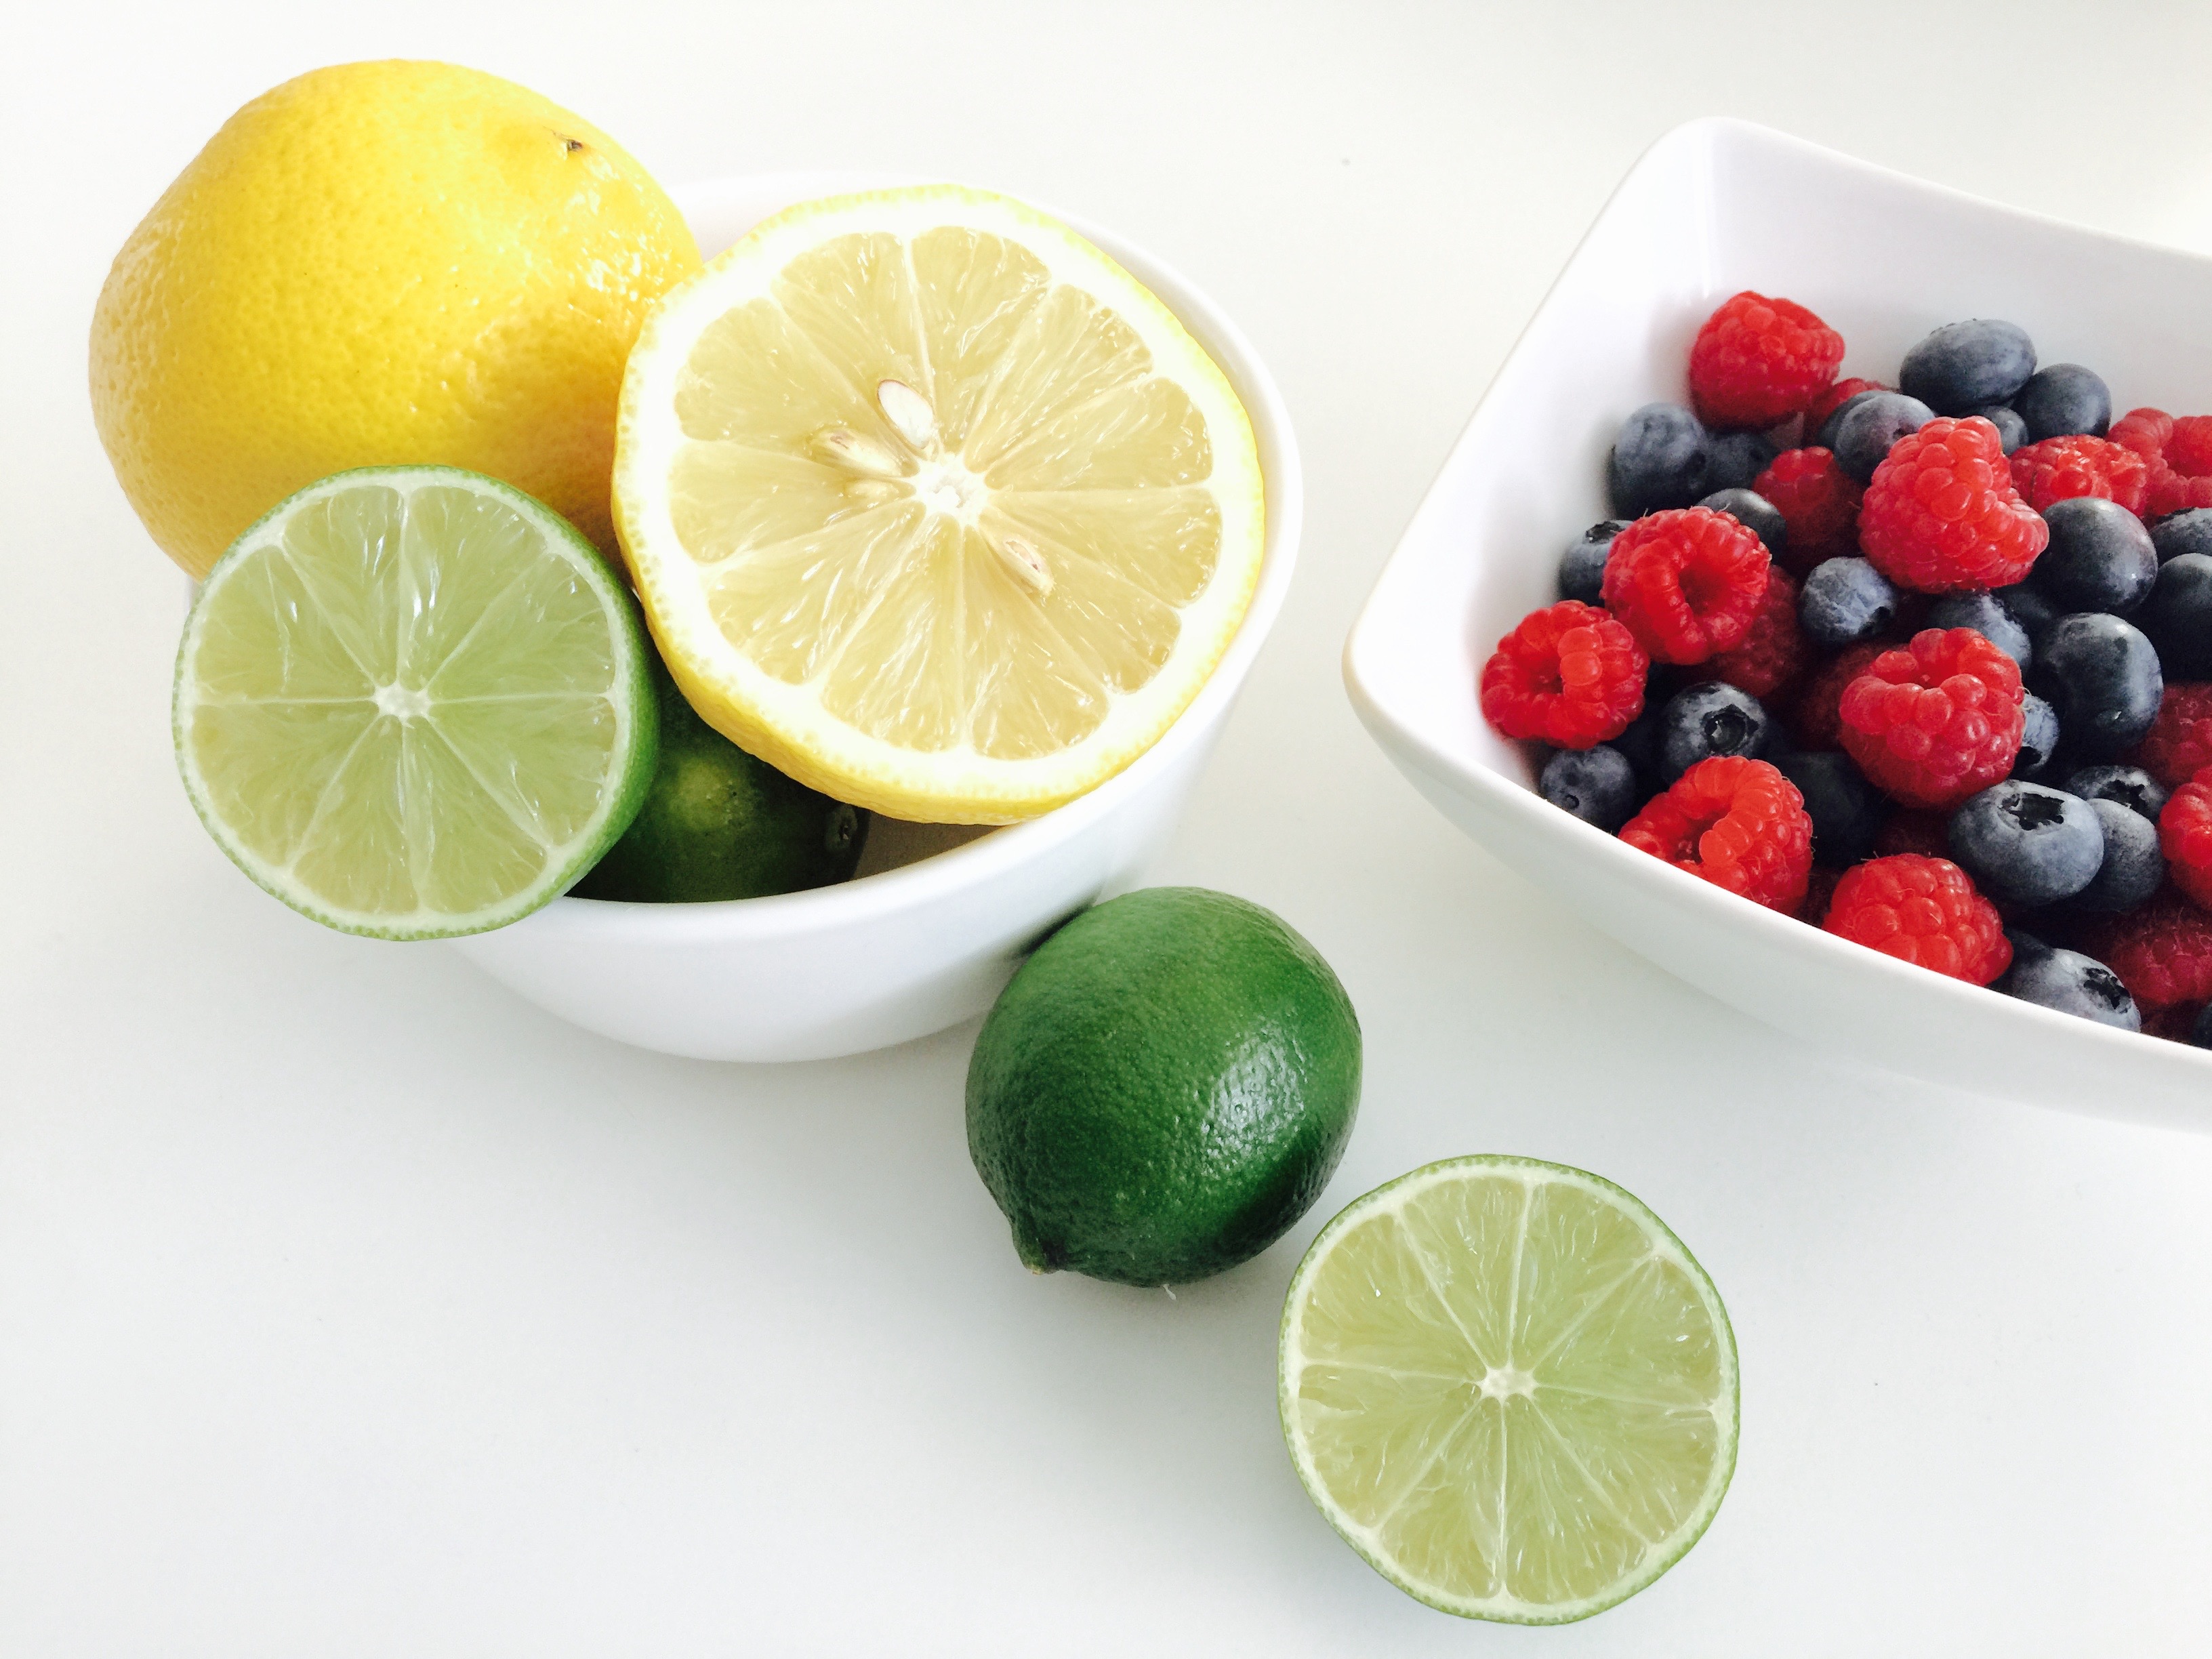 Čerstvé ovoce - Limeta a citrón a miska s borůvkami a malinami